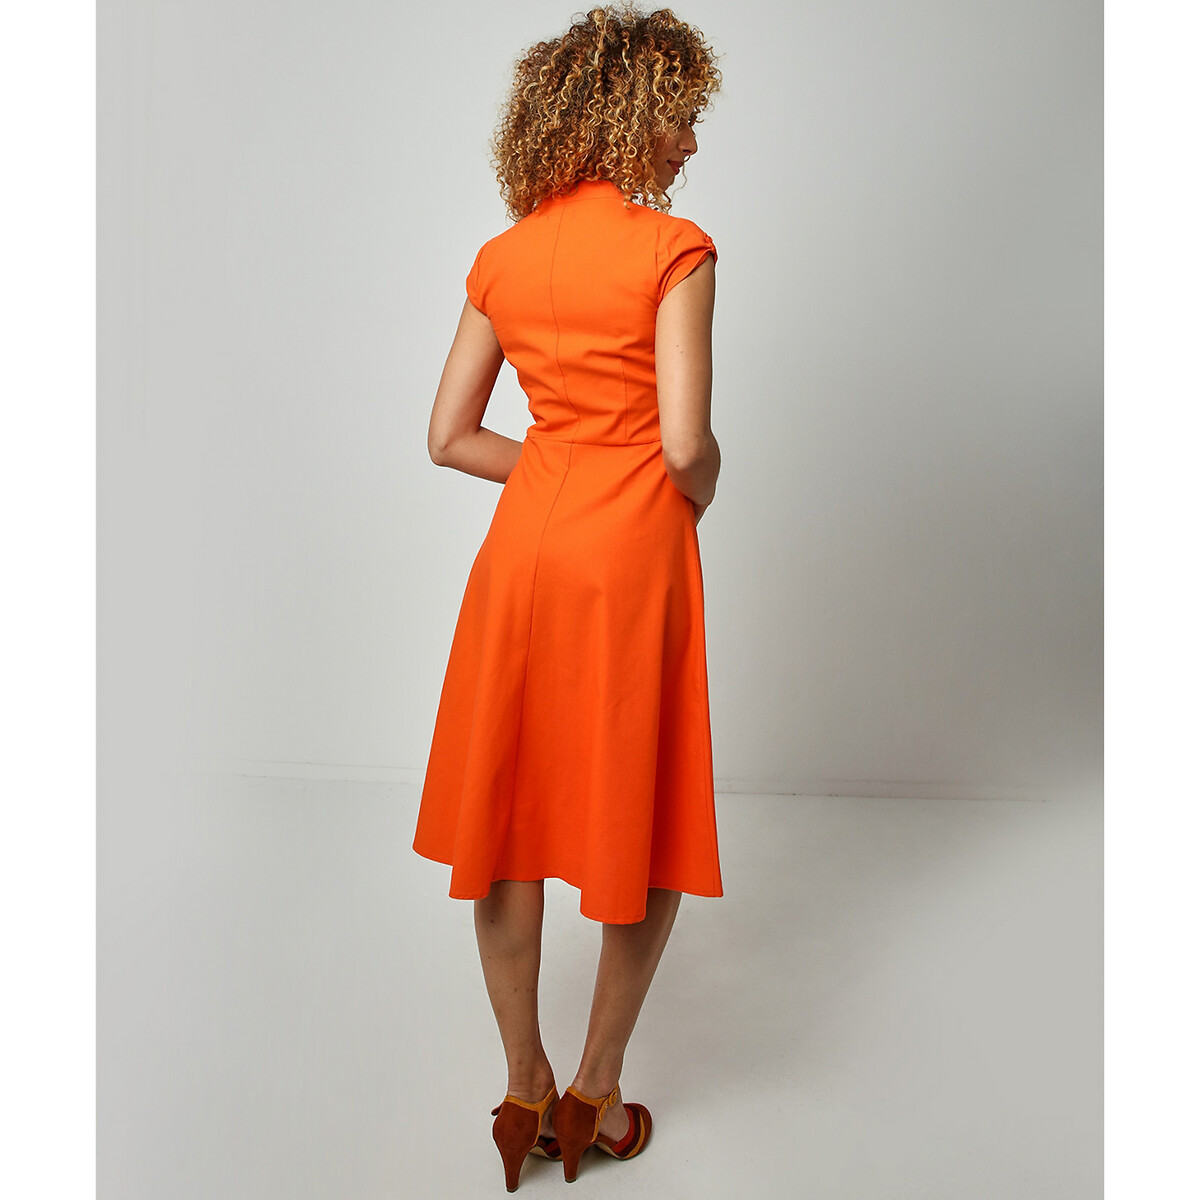 Платье LaRedoute До колен расклешенное v-образный вырез на пуговицах 40 (FR) - 46 (RUS) оранжевый, размер 40 (FR) - 46 (RUS) До колен расклешенное v-образный вырез на пуговицах 40 (FR) - 46 (RUS) оранжевый - фото 2